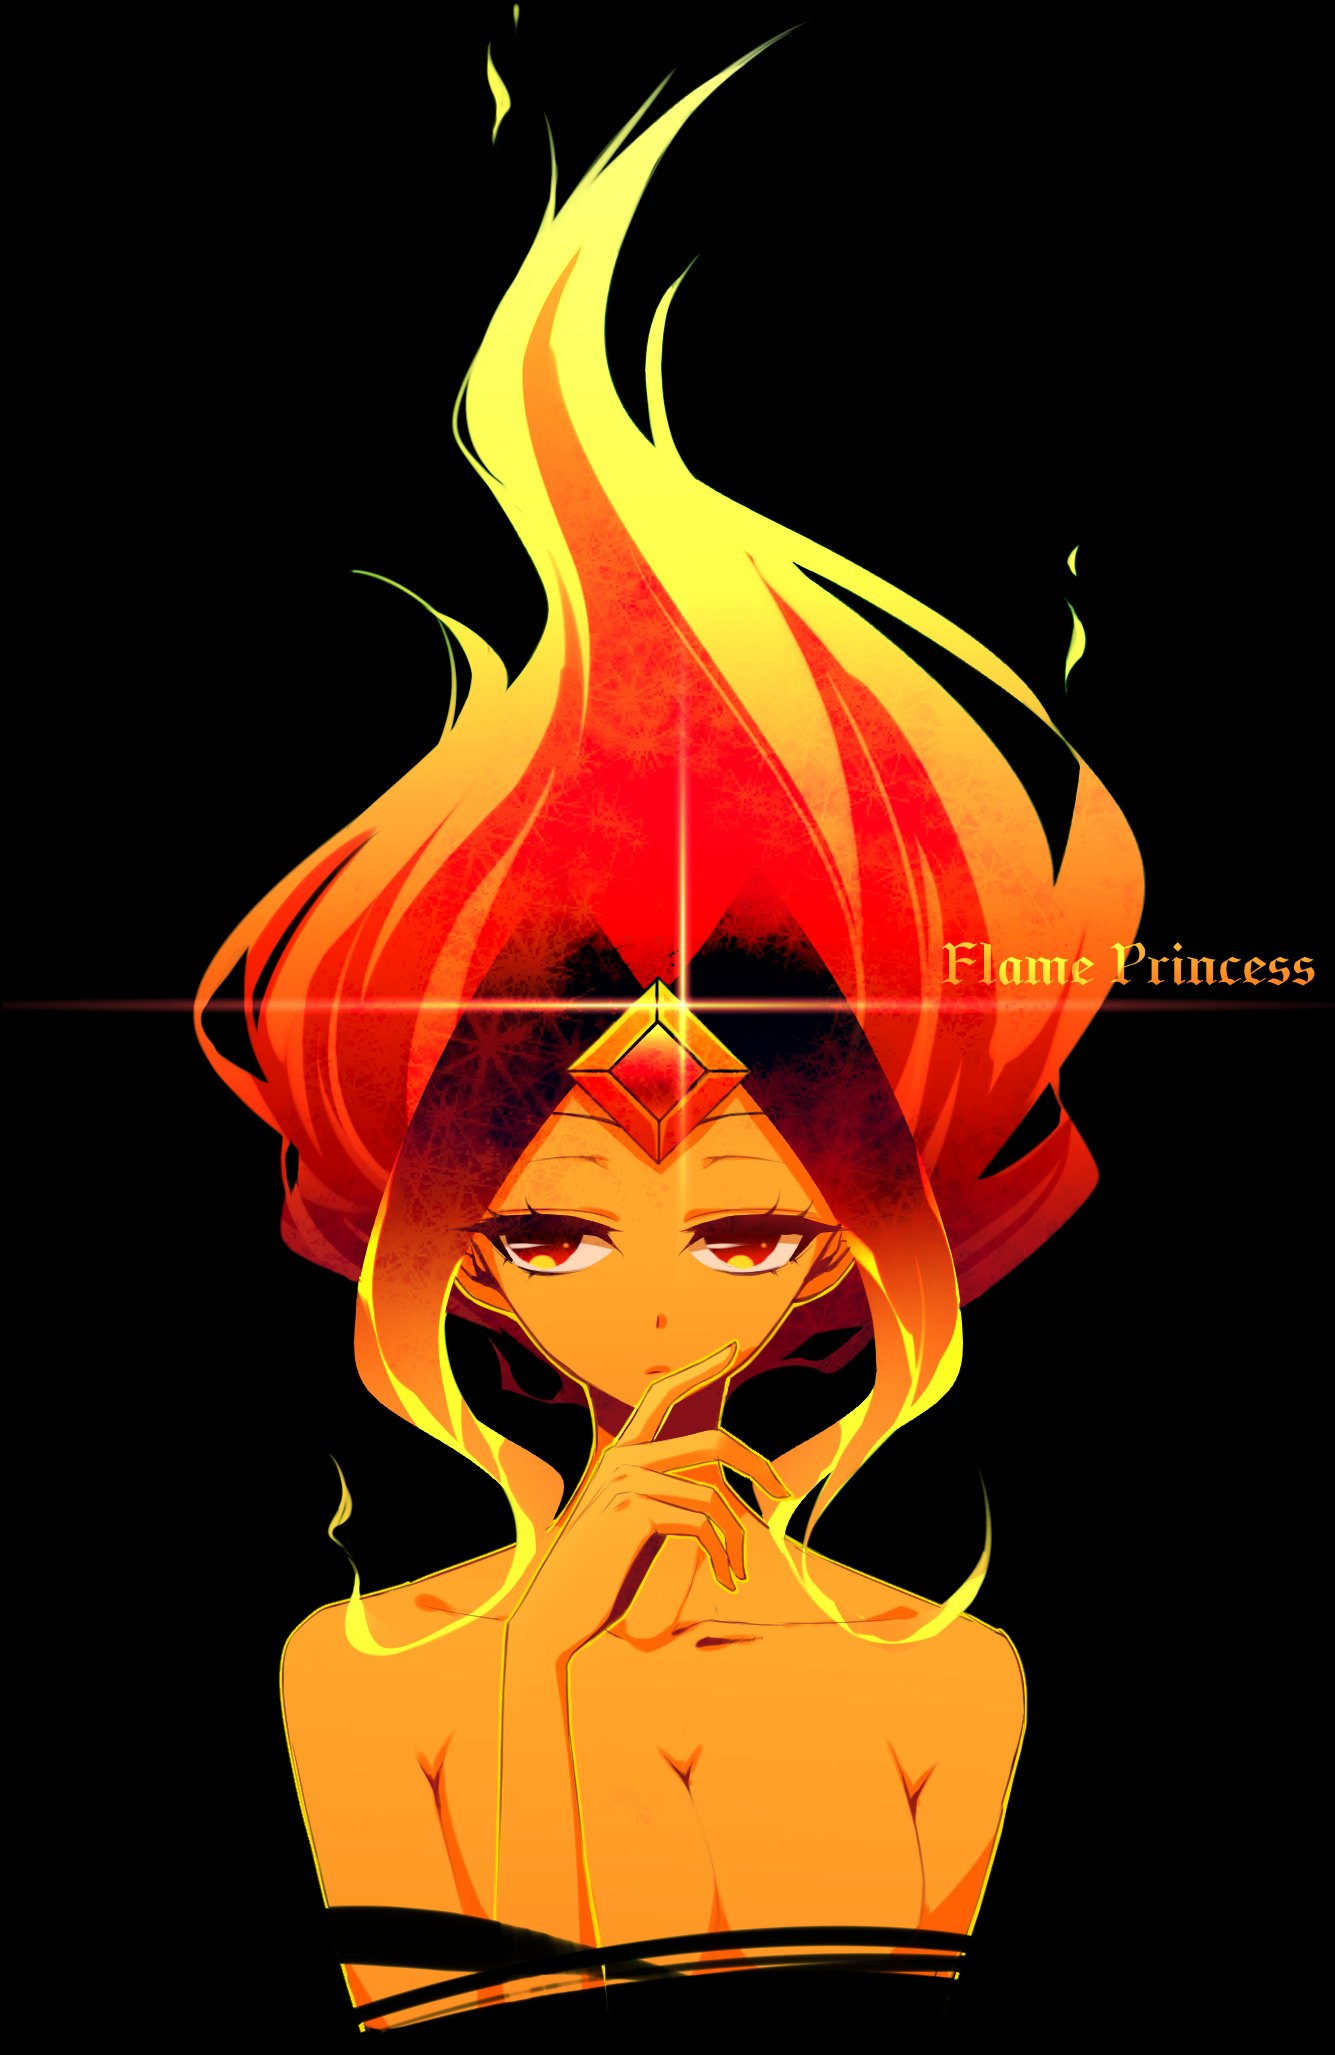 Anime flame princess